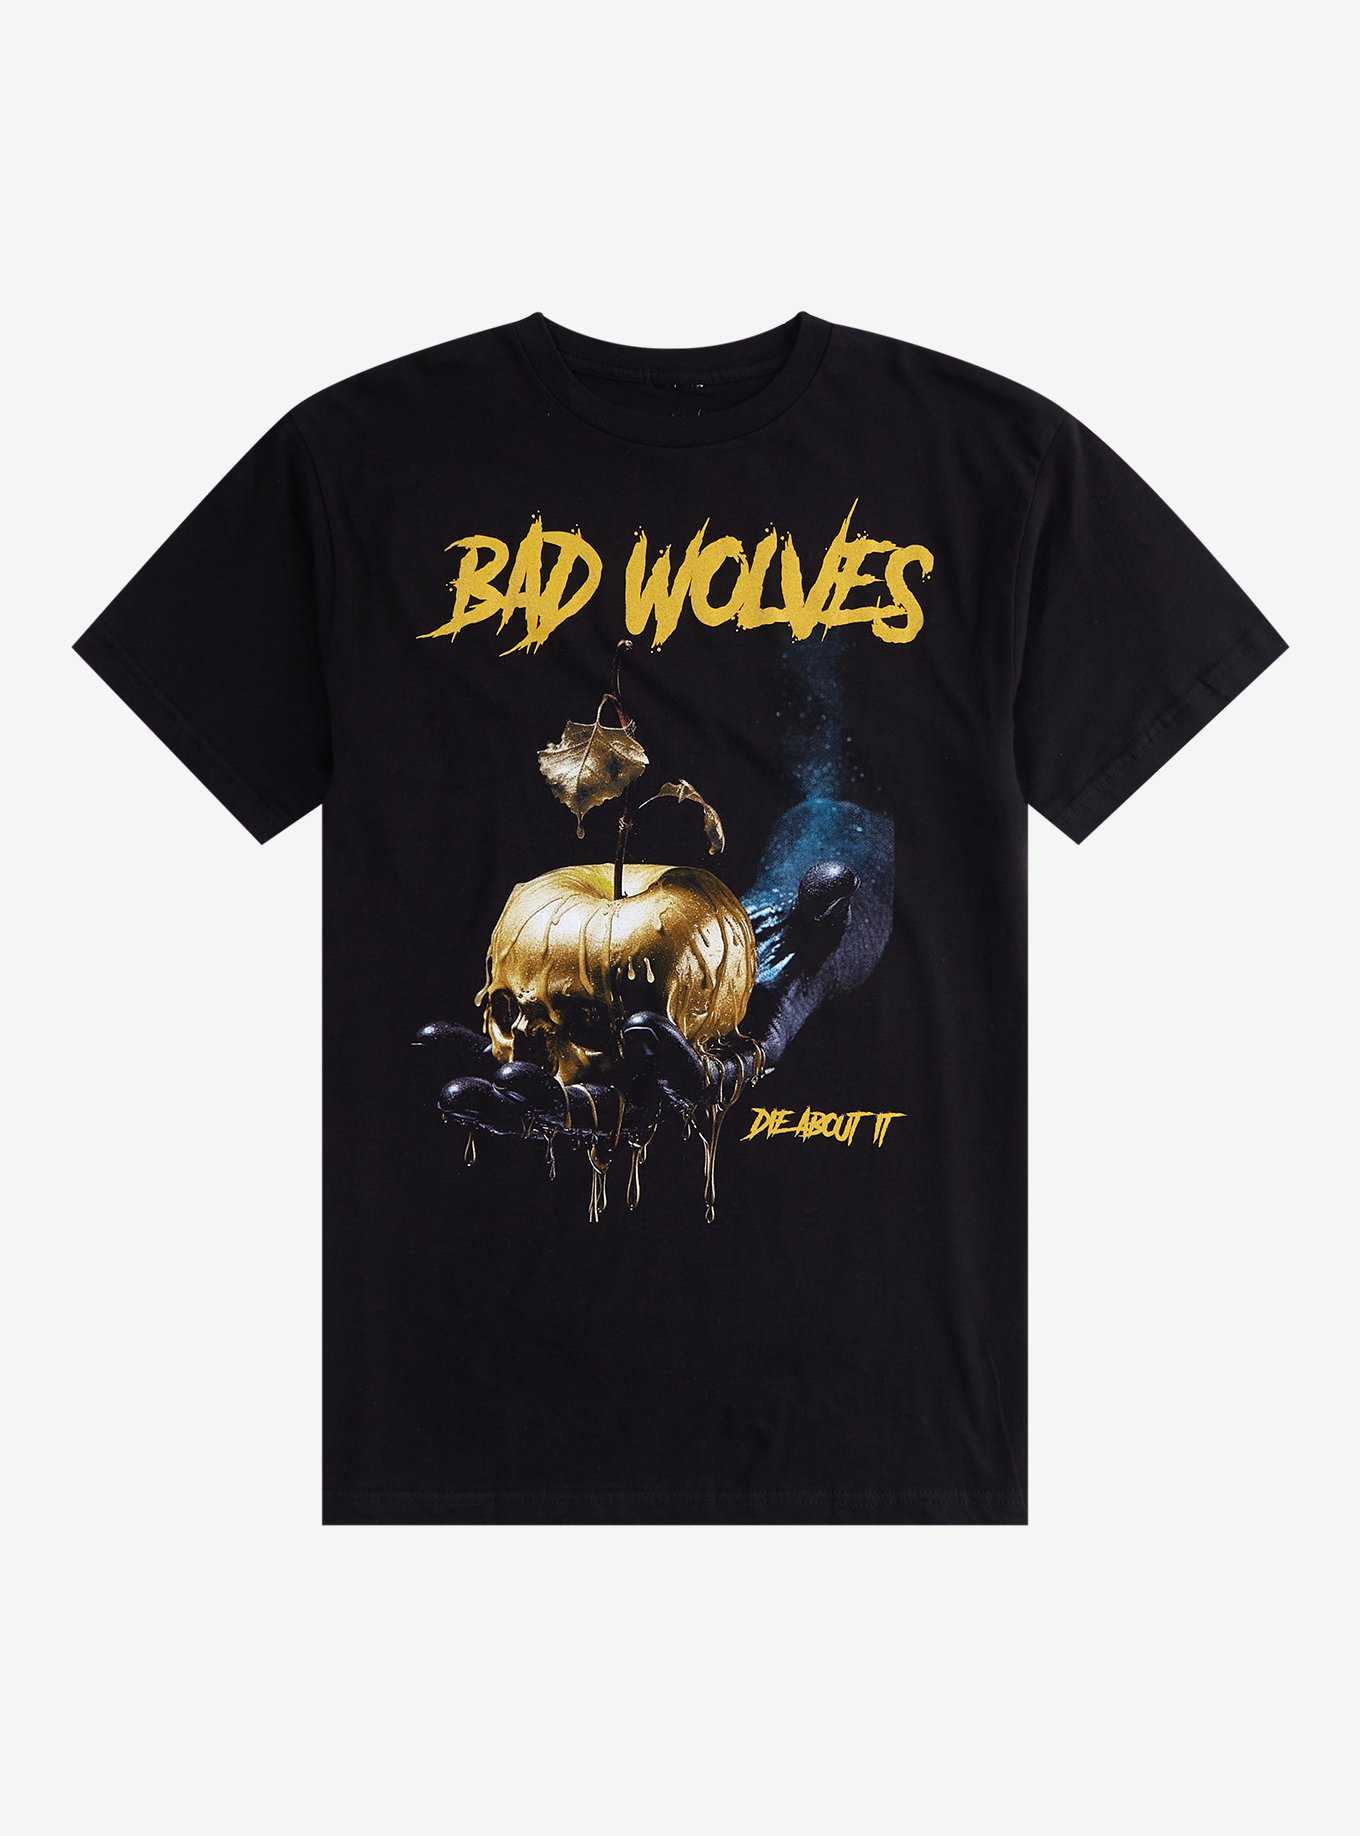 Bad Wolves Die About It Tour T-Shirt, , hi-res